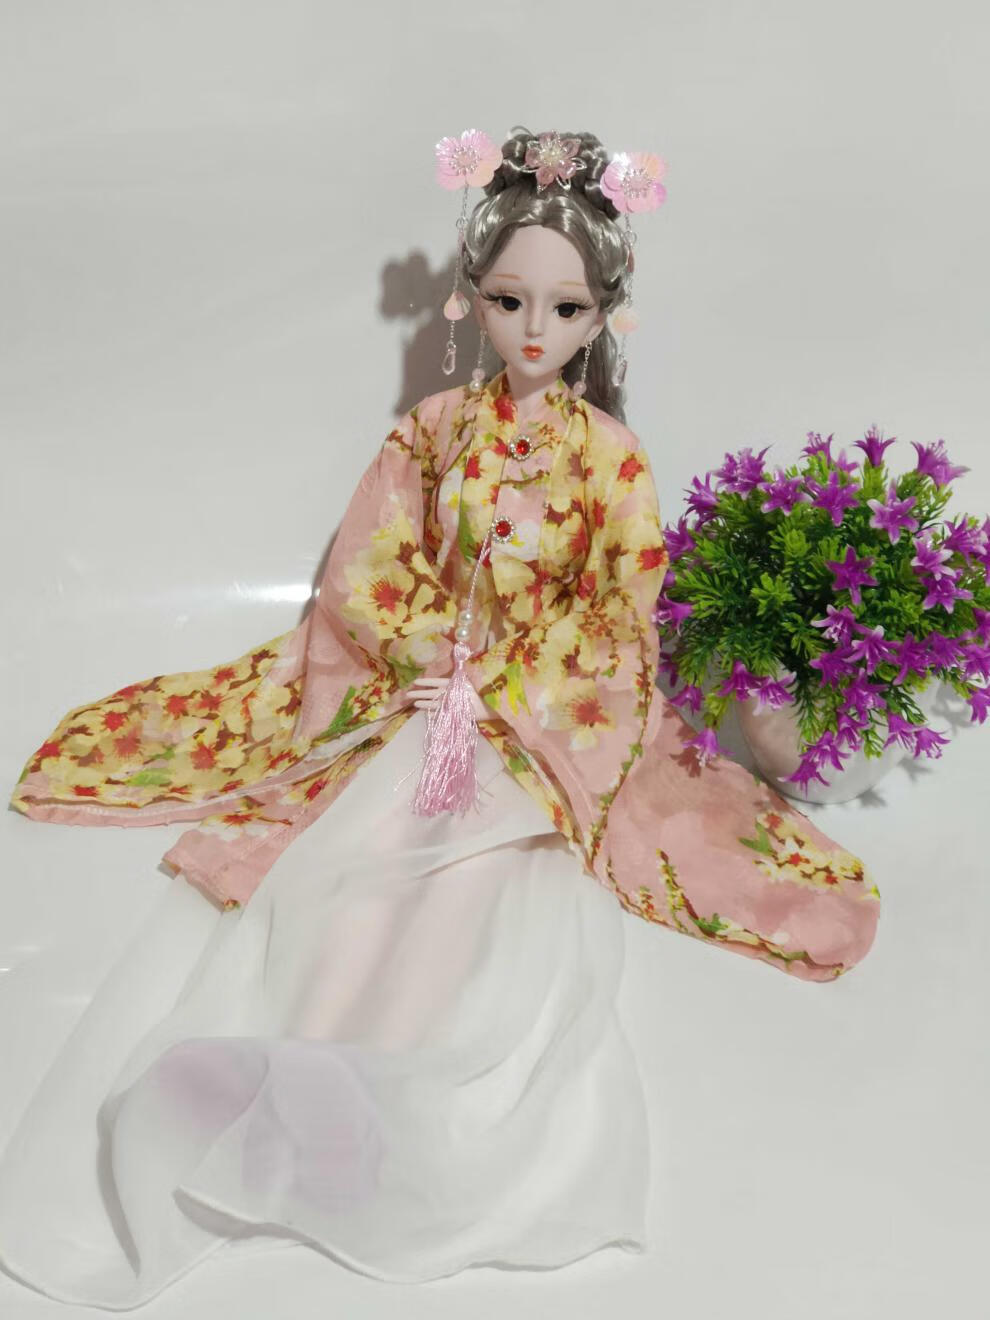 迪美芭比娃娃60厘米古风古装仿德芭比娃娃玩具女孩套装大号古代中国